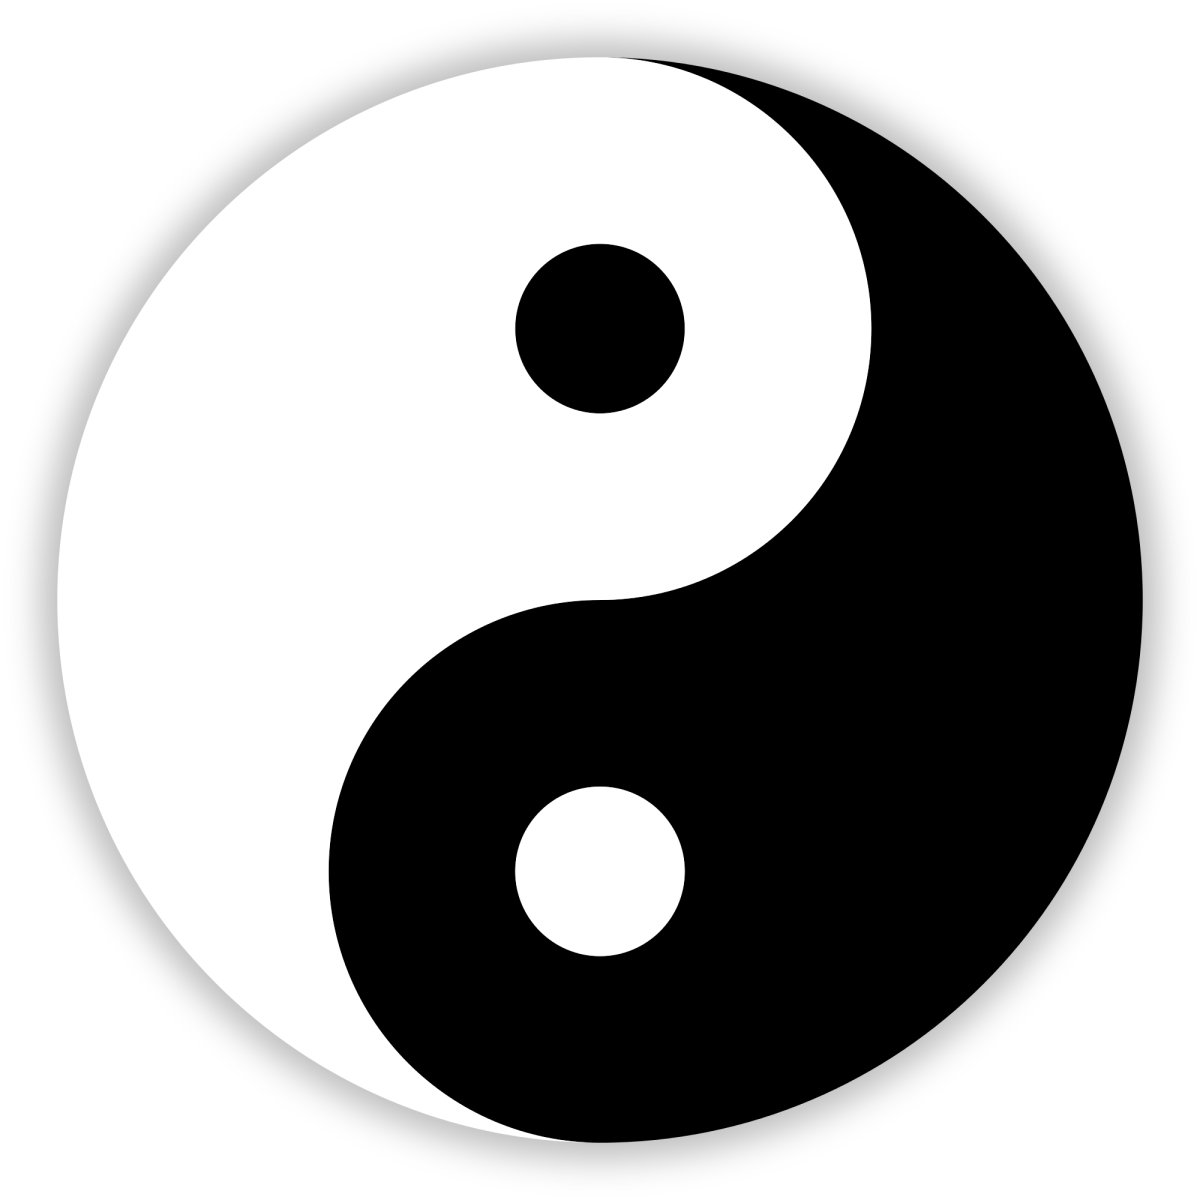 The yin-yang symbol from China